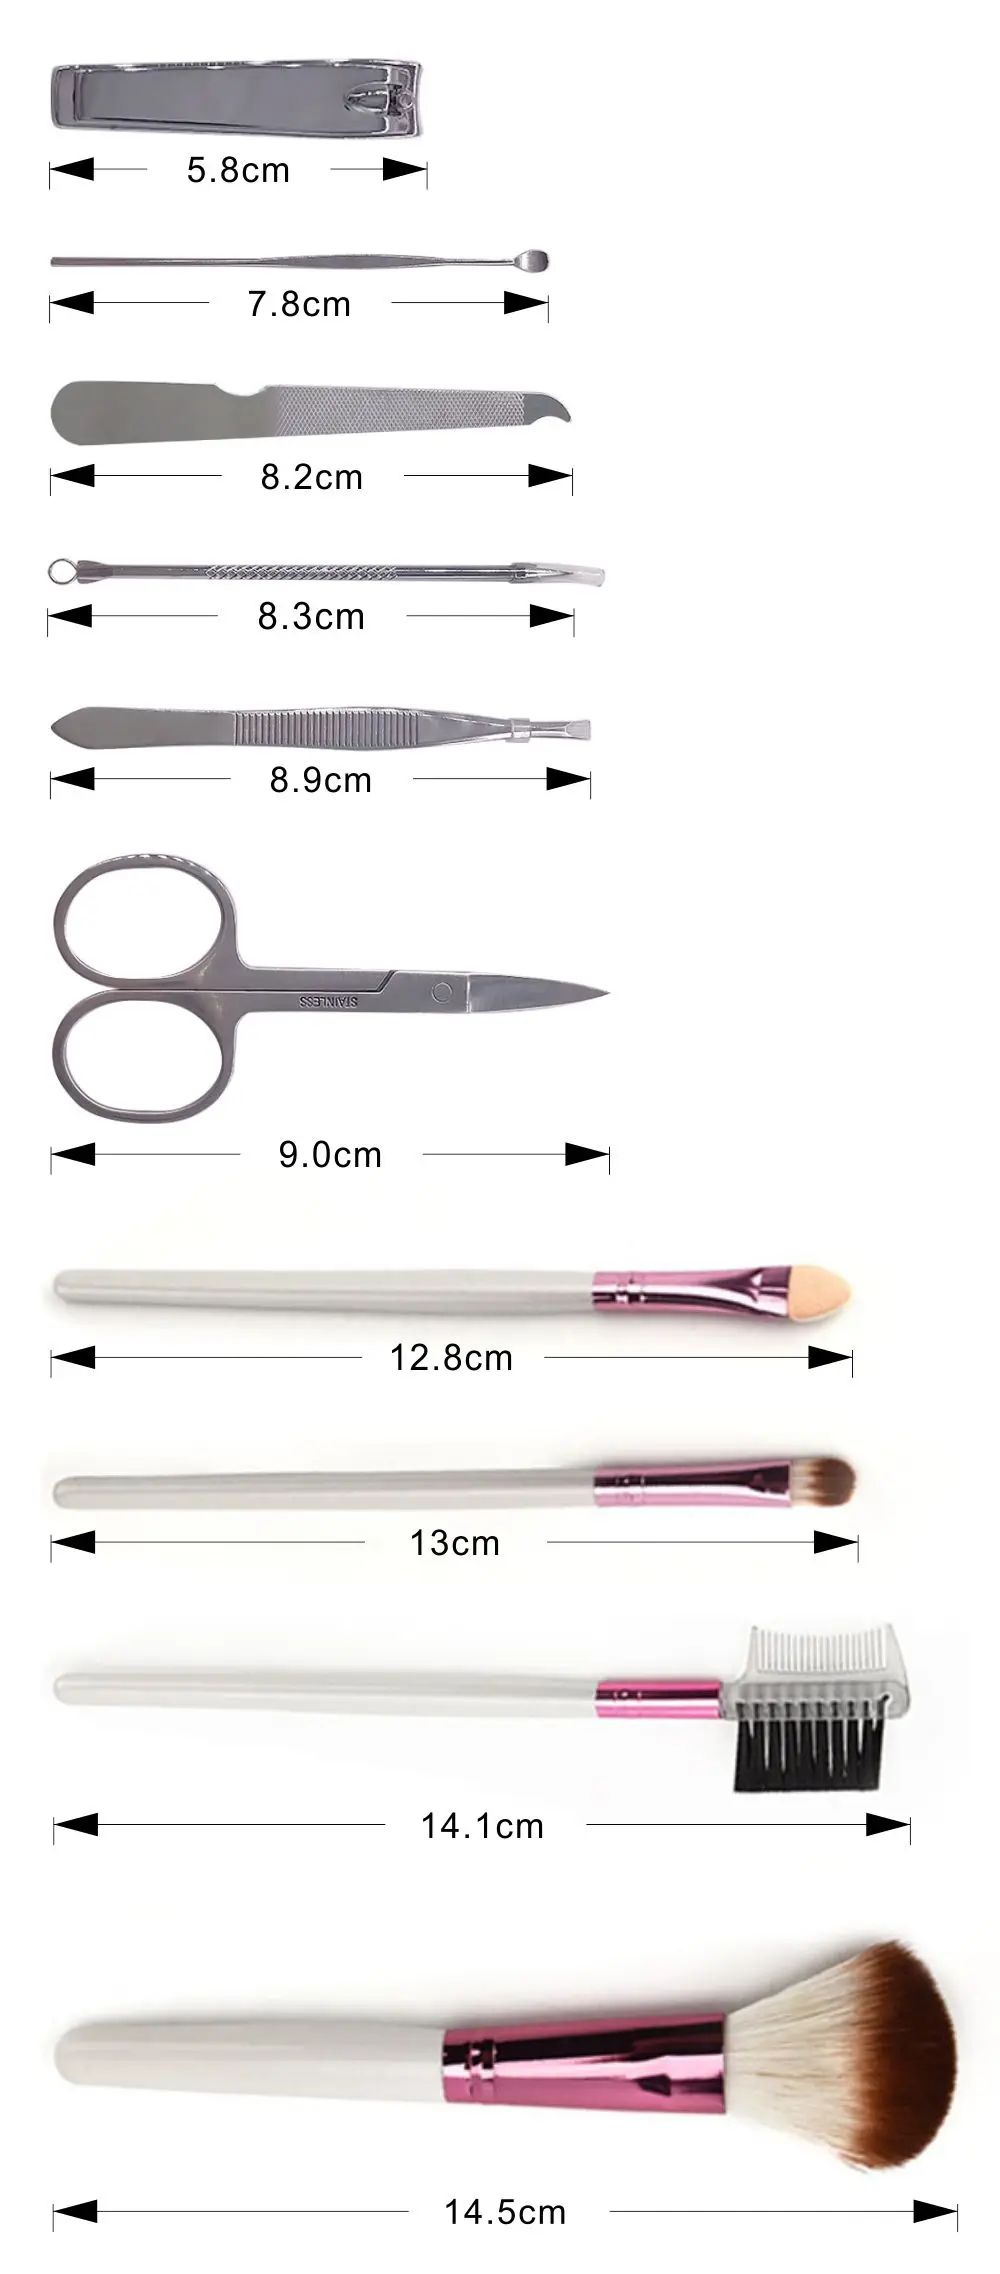 Qmake 10 шт Многофункциональный набор инструментов кисти для макияжа Косметика основа для бровей Набор клиппер маникюрный педикюрный набор для ухода